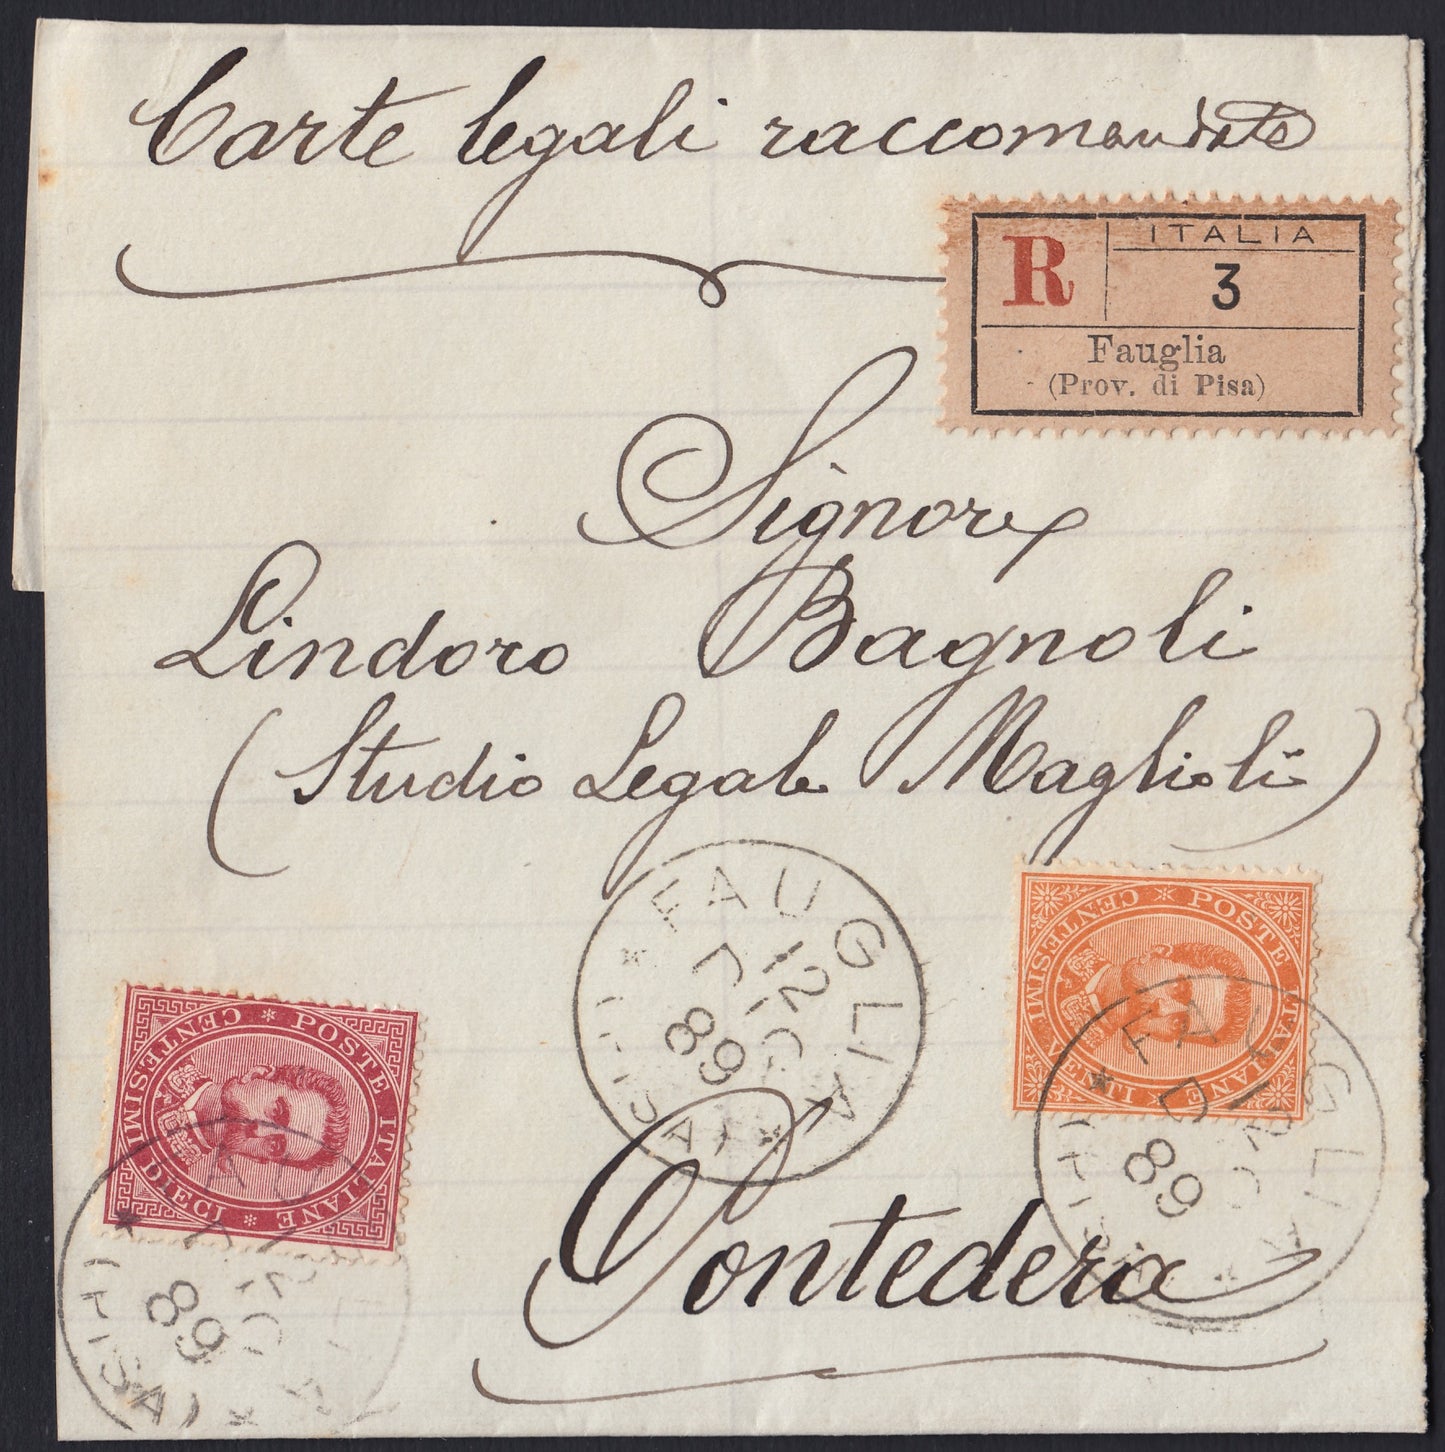 UMBSP7 - 1889 - Fascetta per carte legali raccomandata da Fauglia per Pontedera 12/12/89 affrancata con c. 10 carminio + c. 20 arancio (38 + 39)